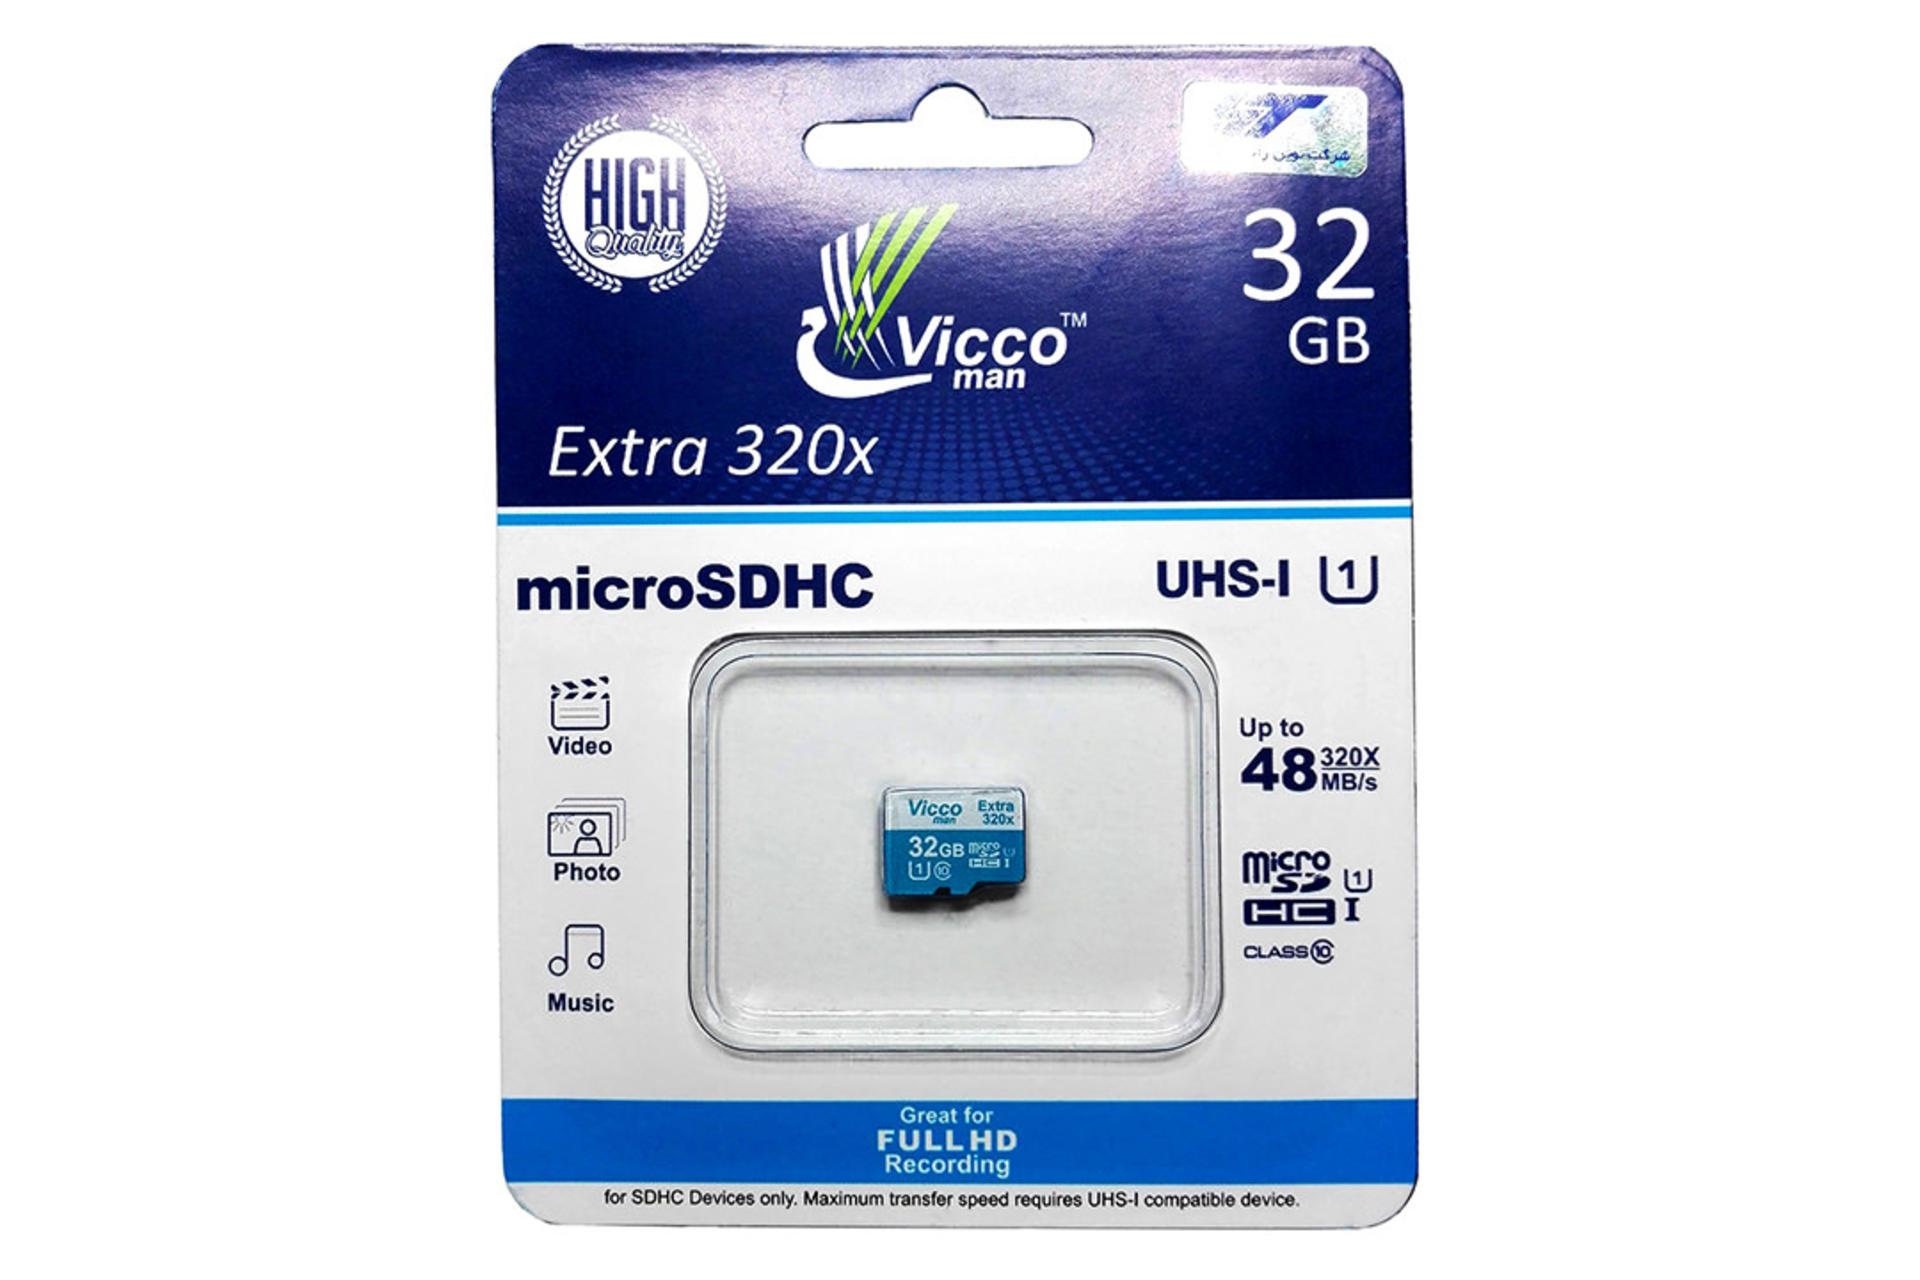 مرجع متخصصين ايران Viccoman Extra 320x microSDHC Class 10 UHS-I U1 32GB